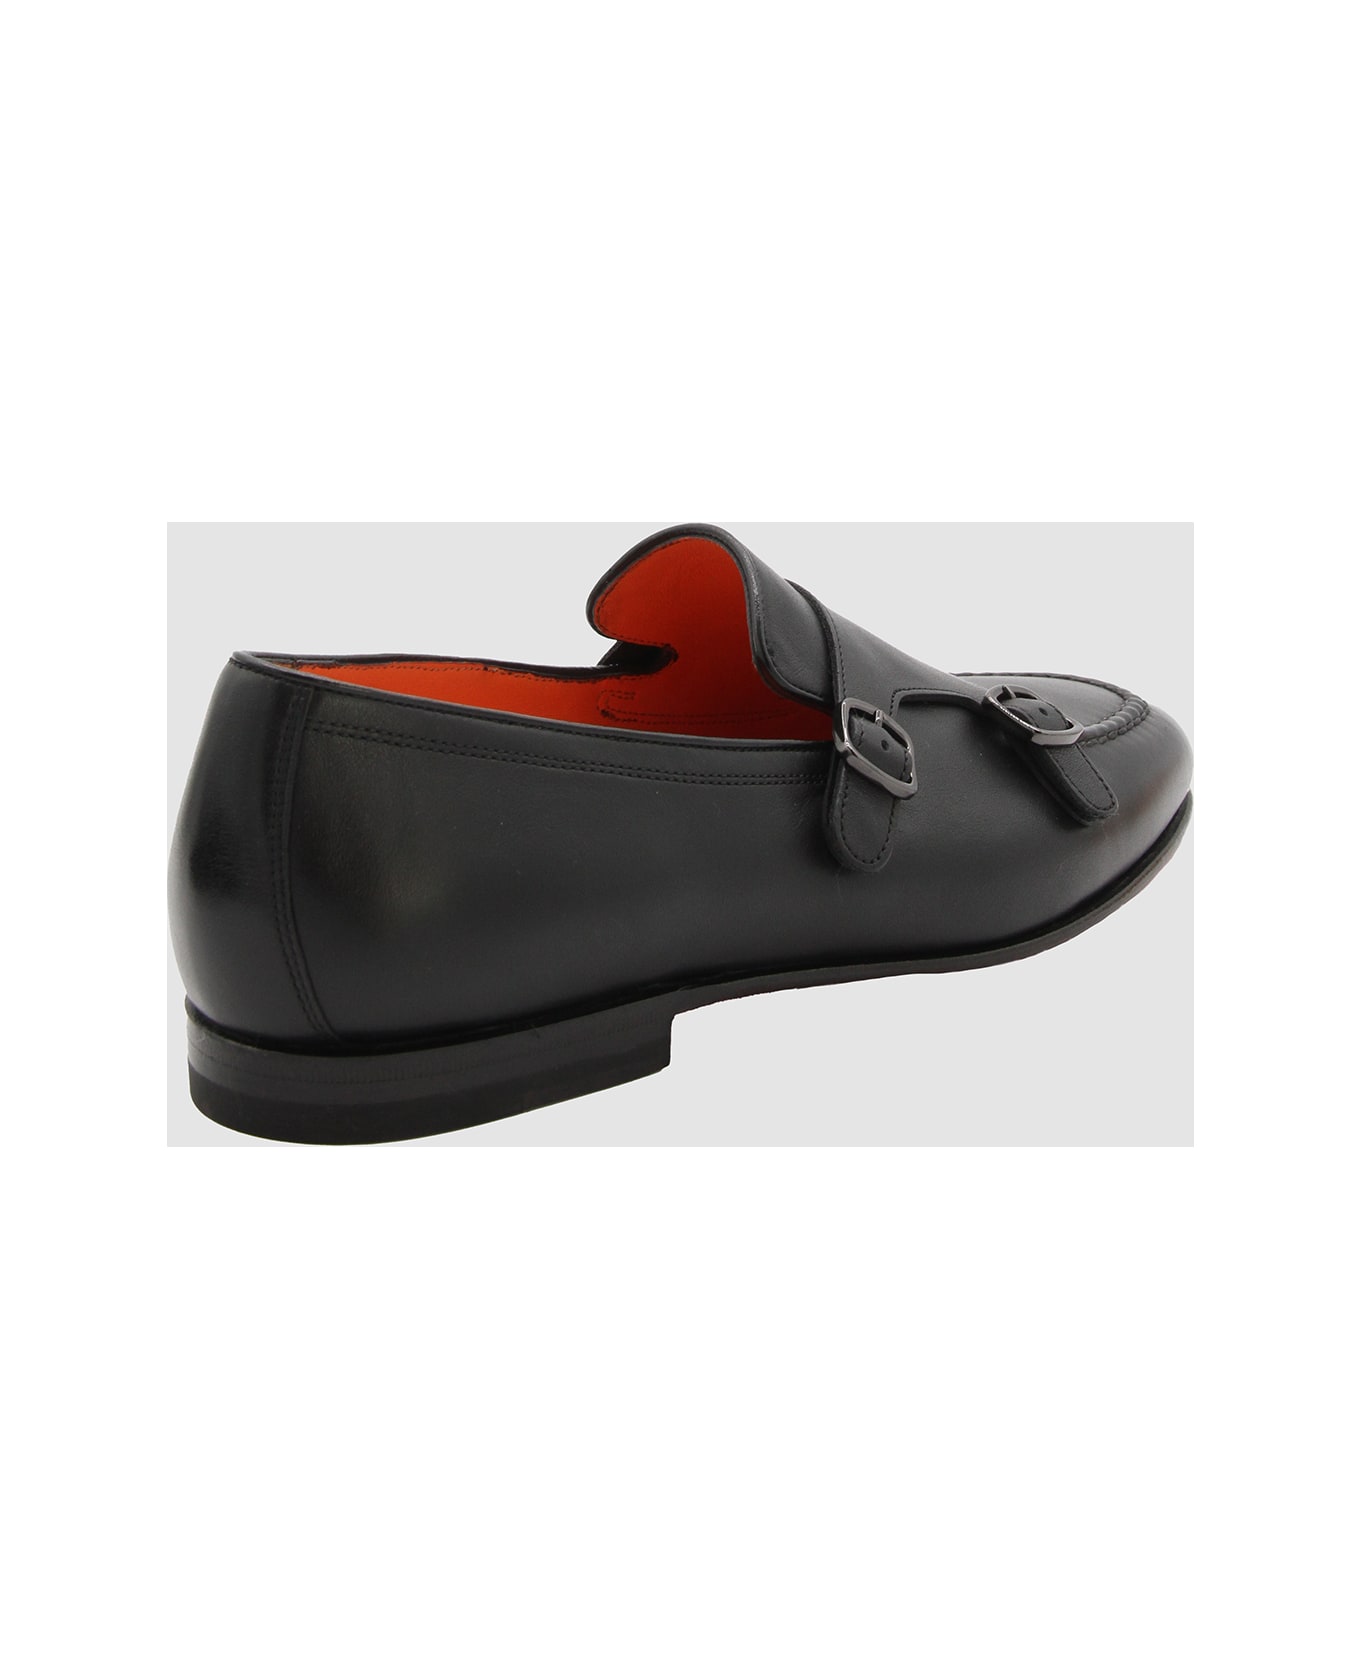 Santoni Black Leather Loafers - Black